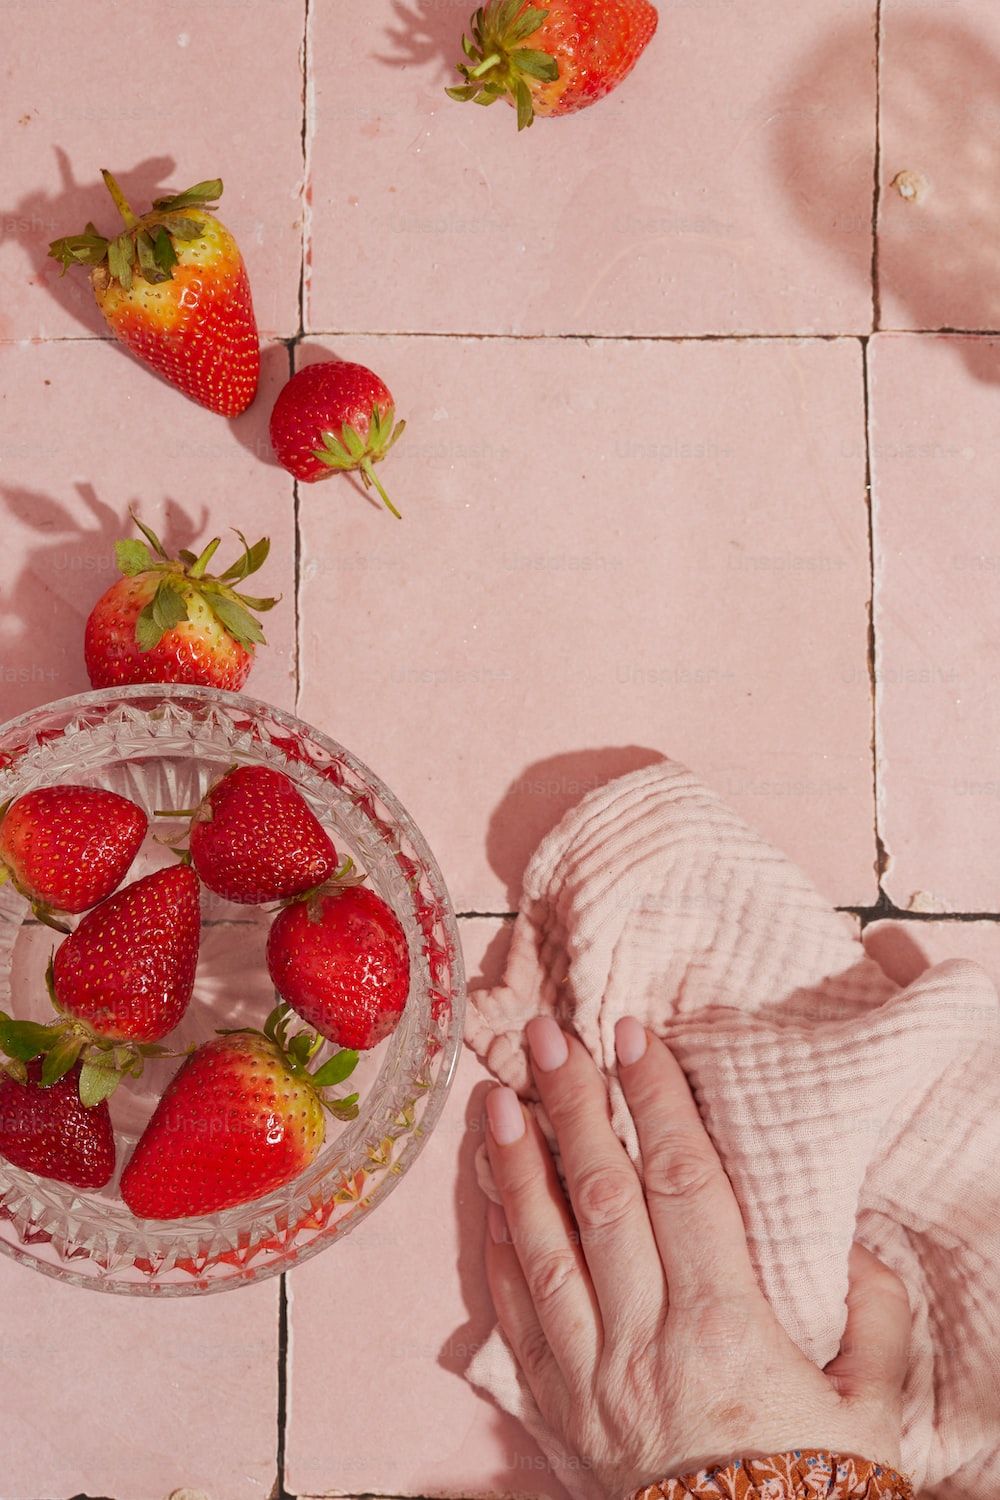  Erdbeeren Hintergrundbild 1000x1500. Strawberries Picture. Download Free Image